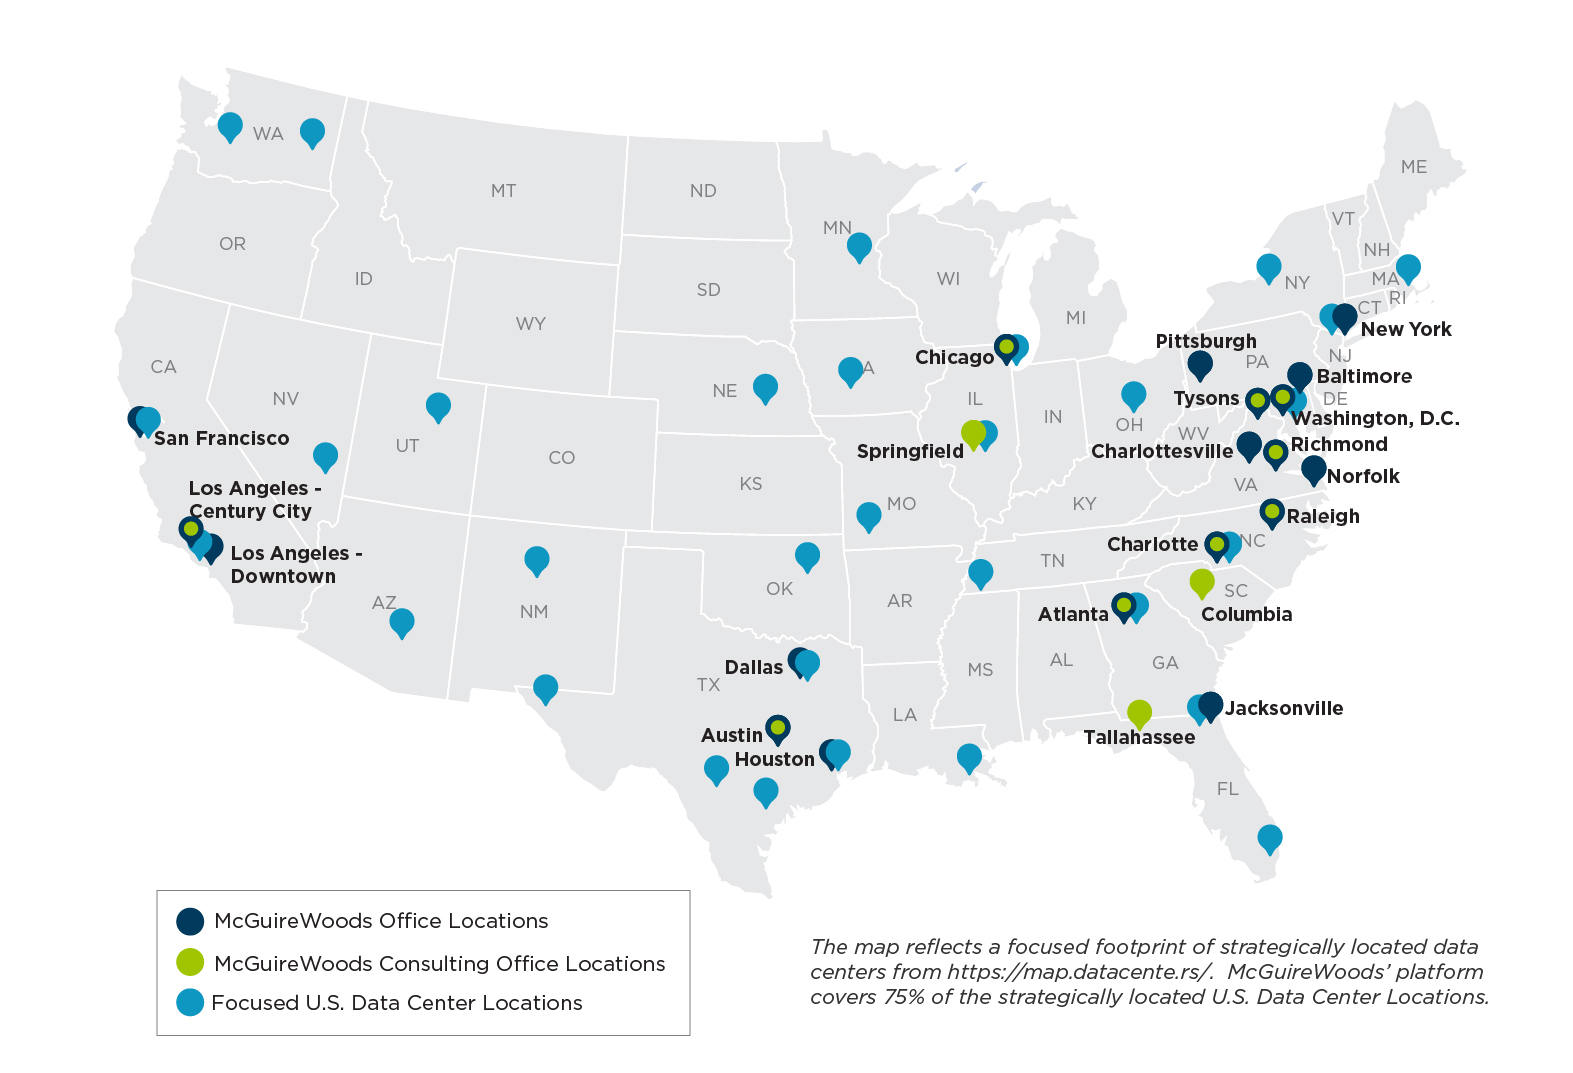 Focused US data center locations